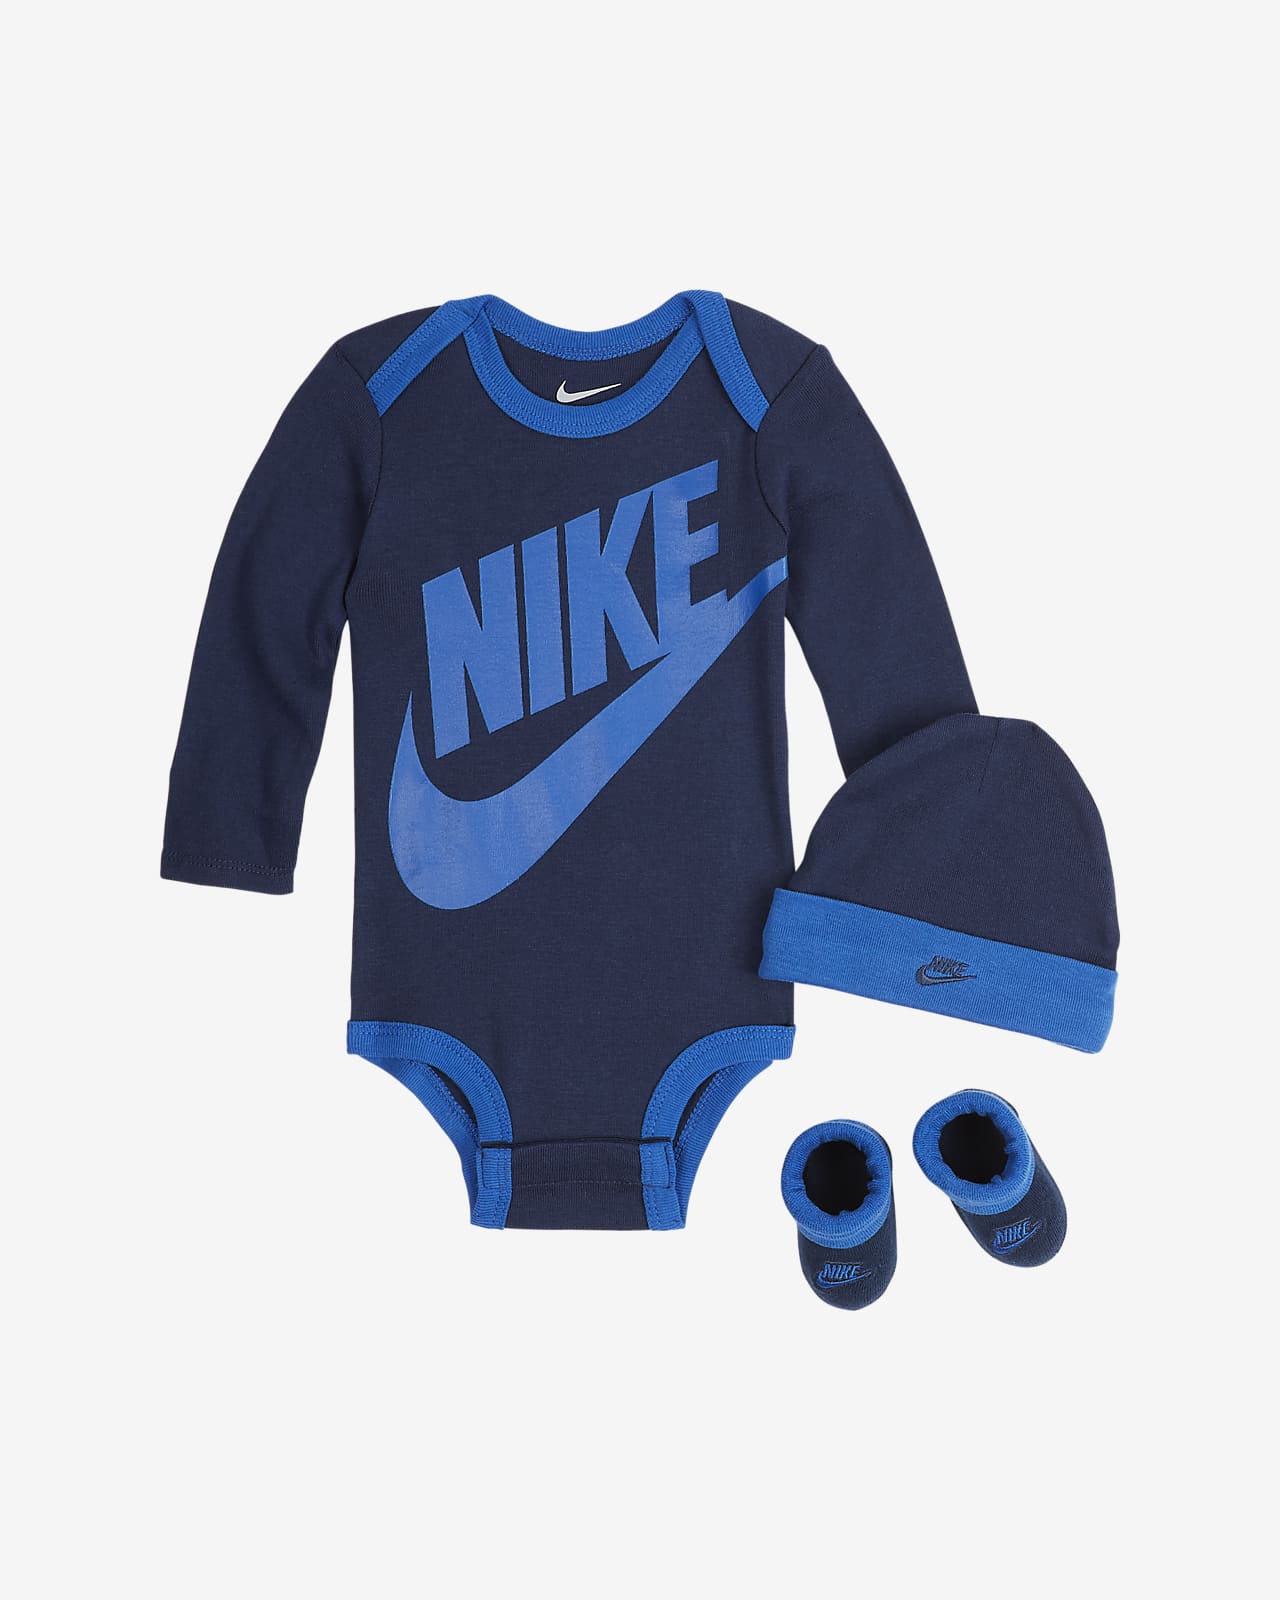 Nike ensemble Nike comprend un body en coton bonnet chaussons assortis  6-12M